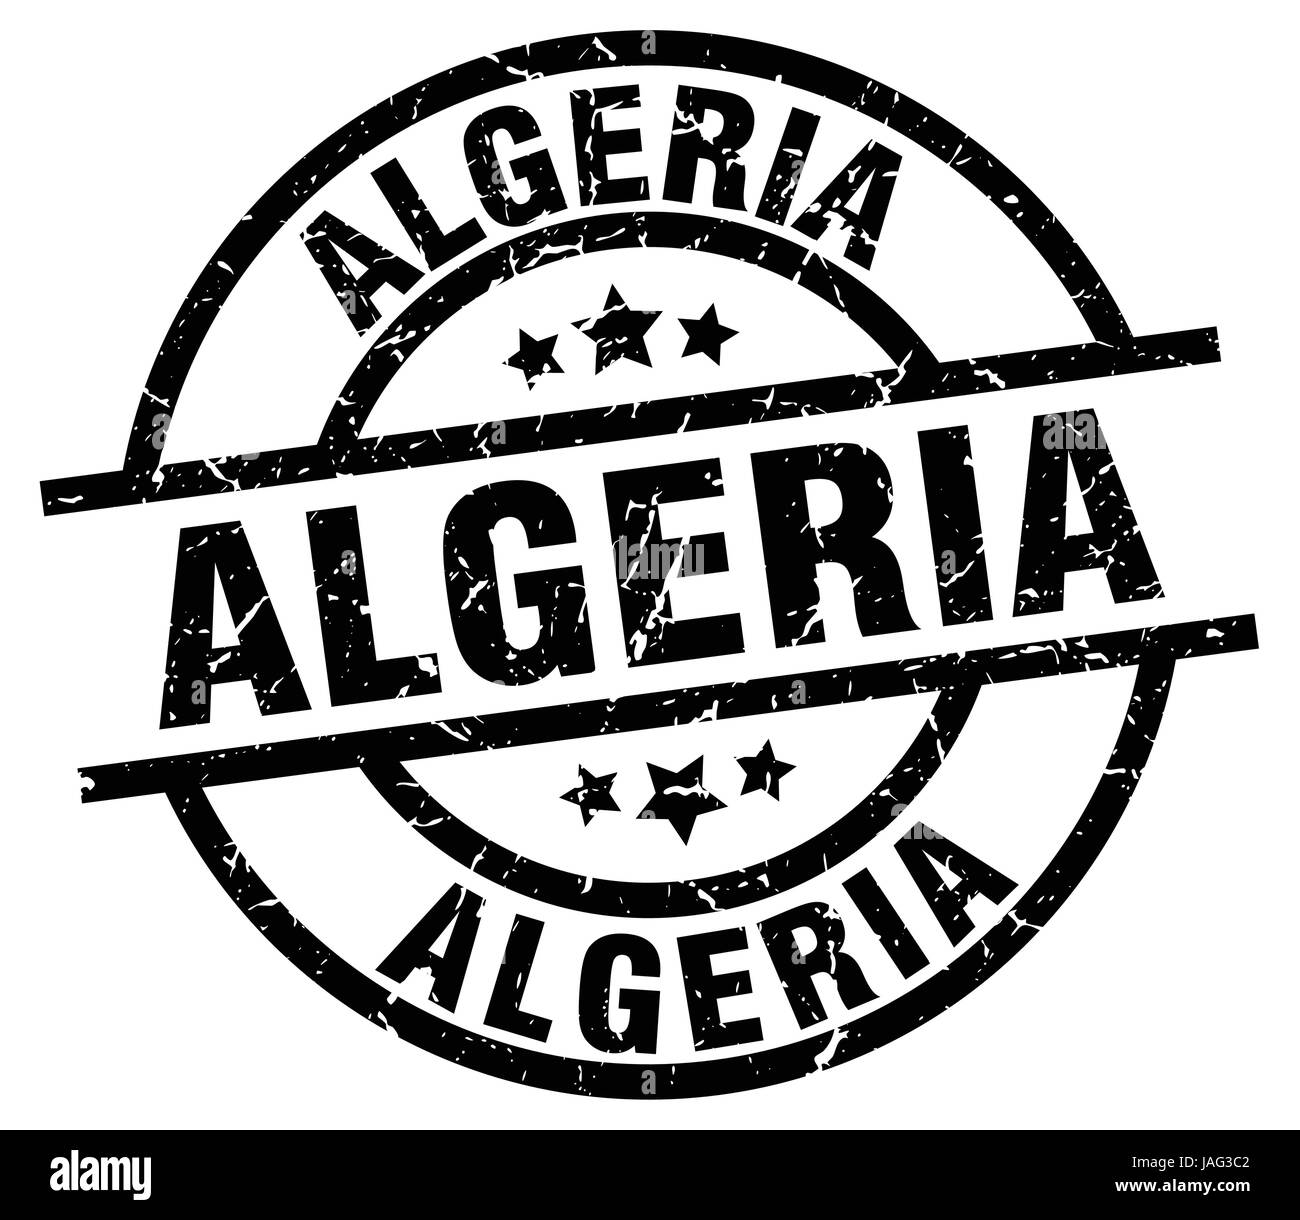 Algeria black round grunge stamp Stock Vector